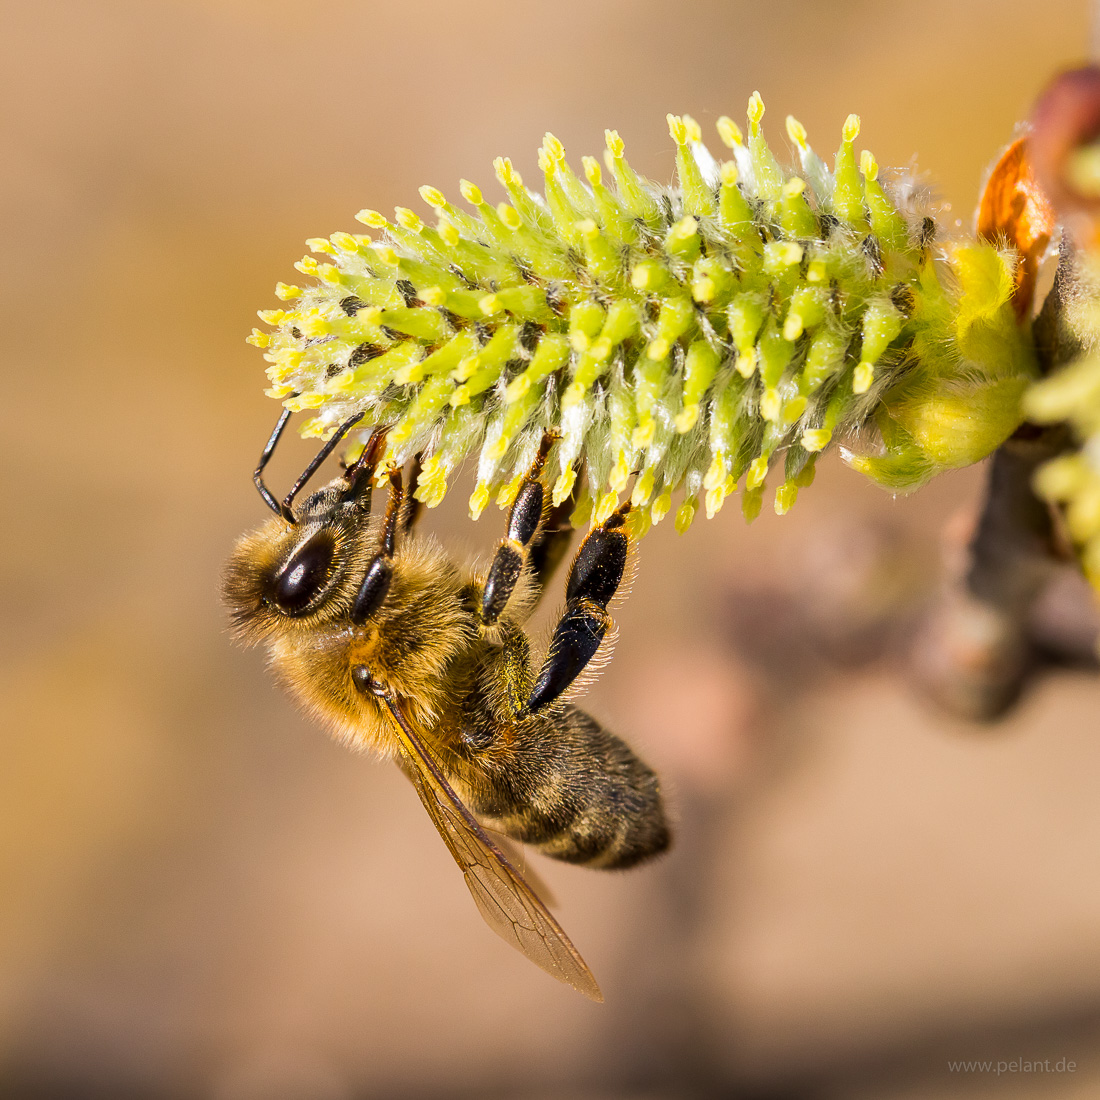 willow catkin (Salix caprea) with honey bee